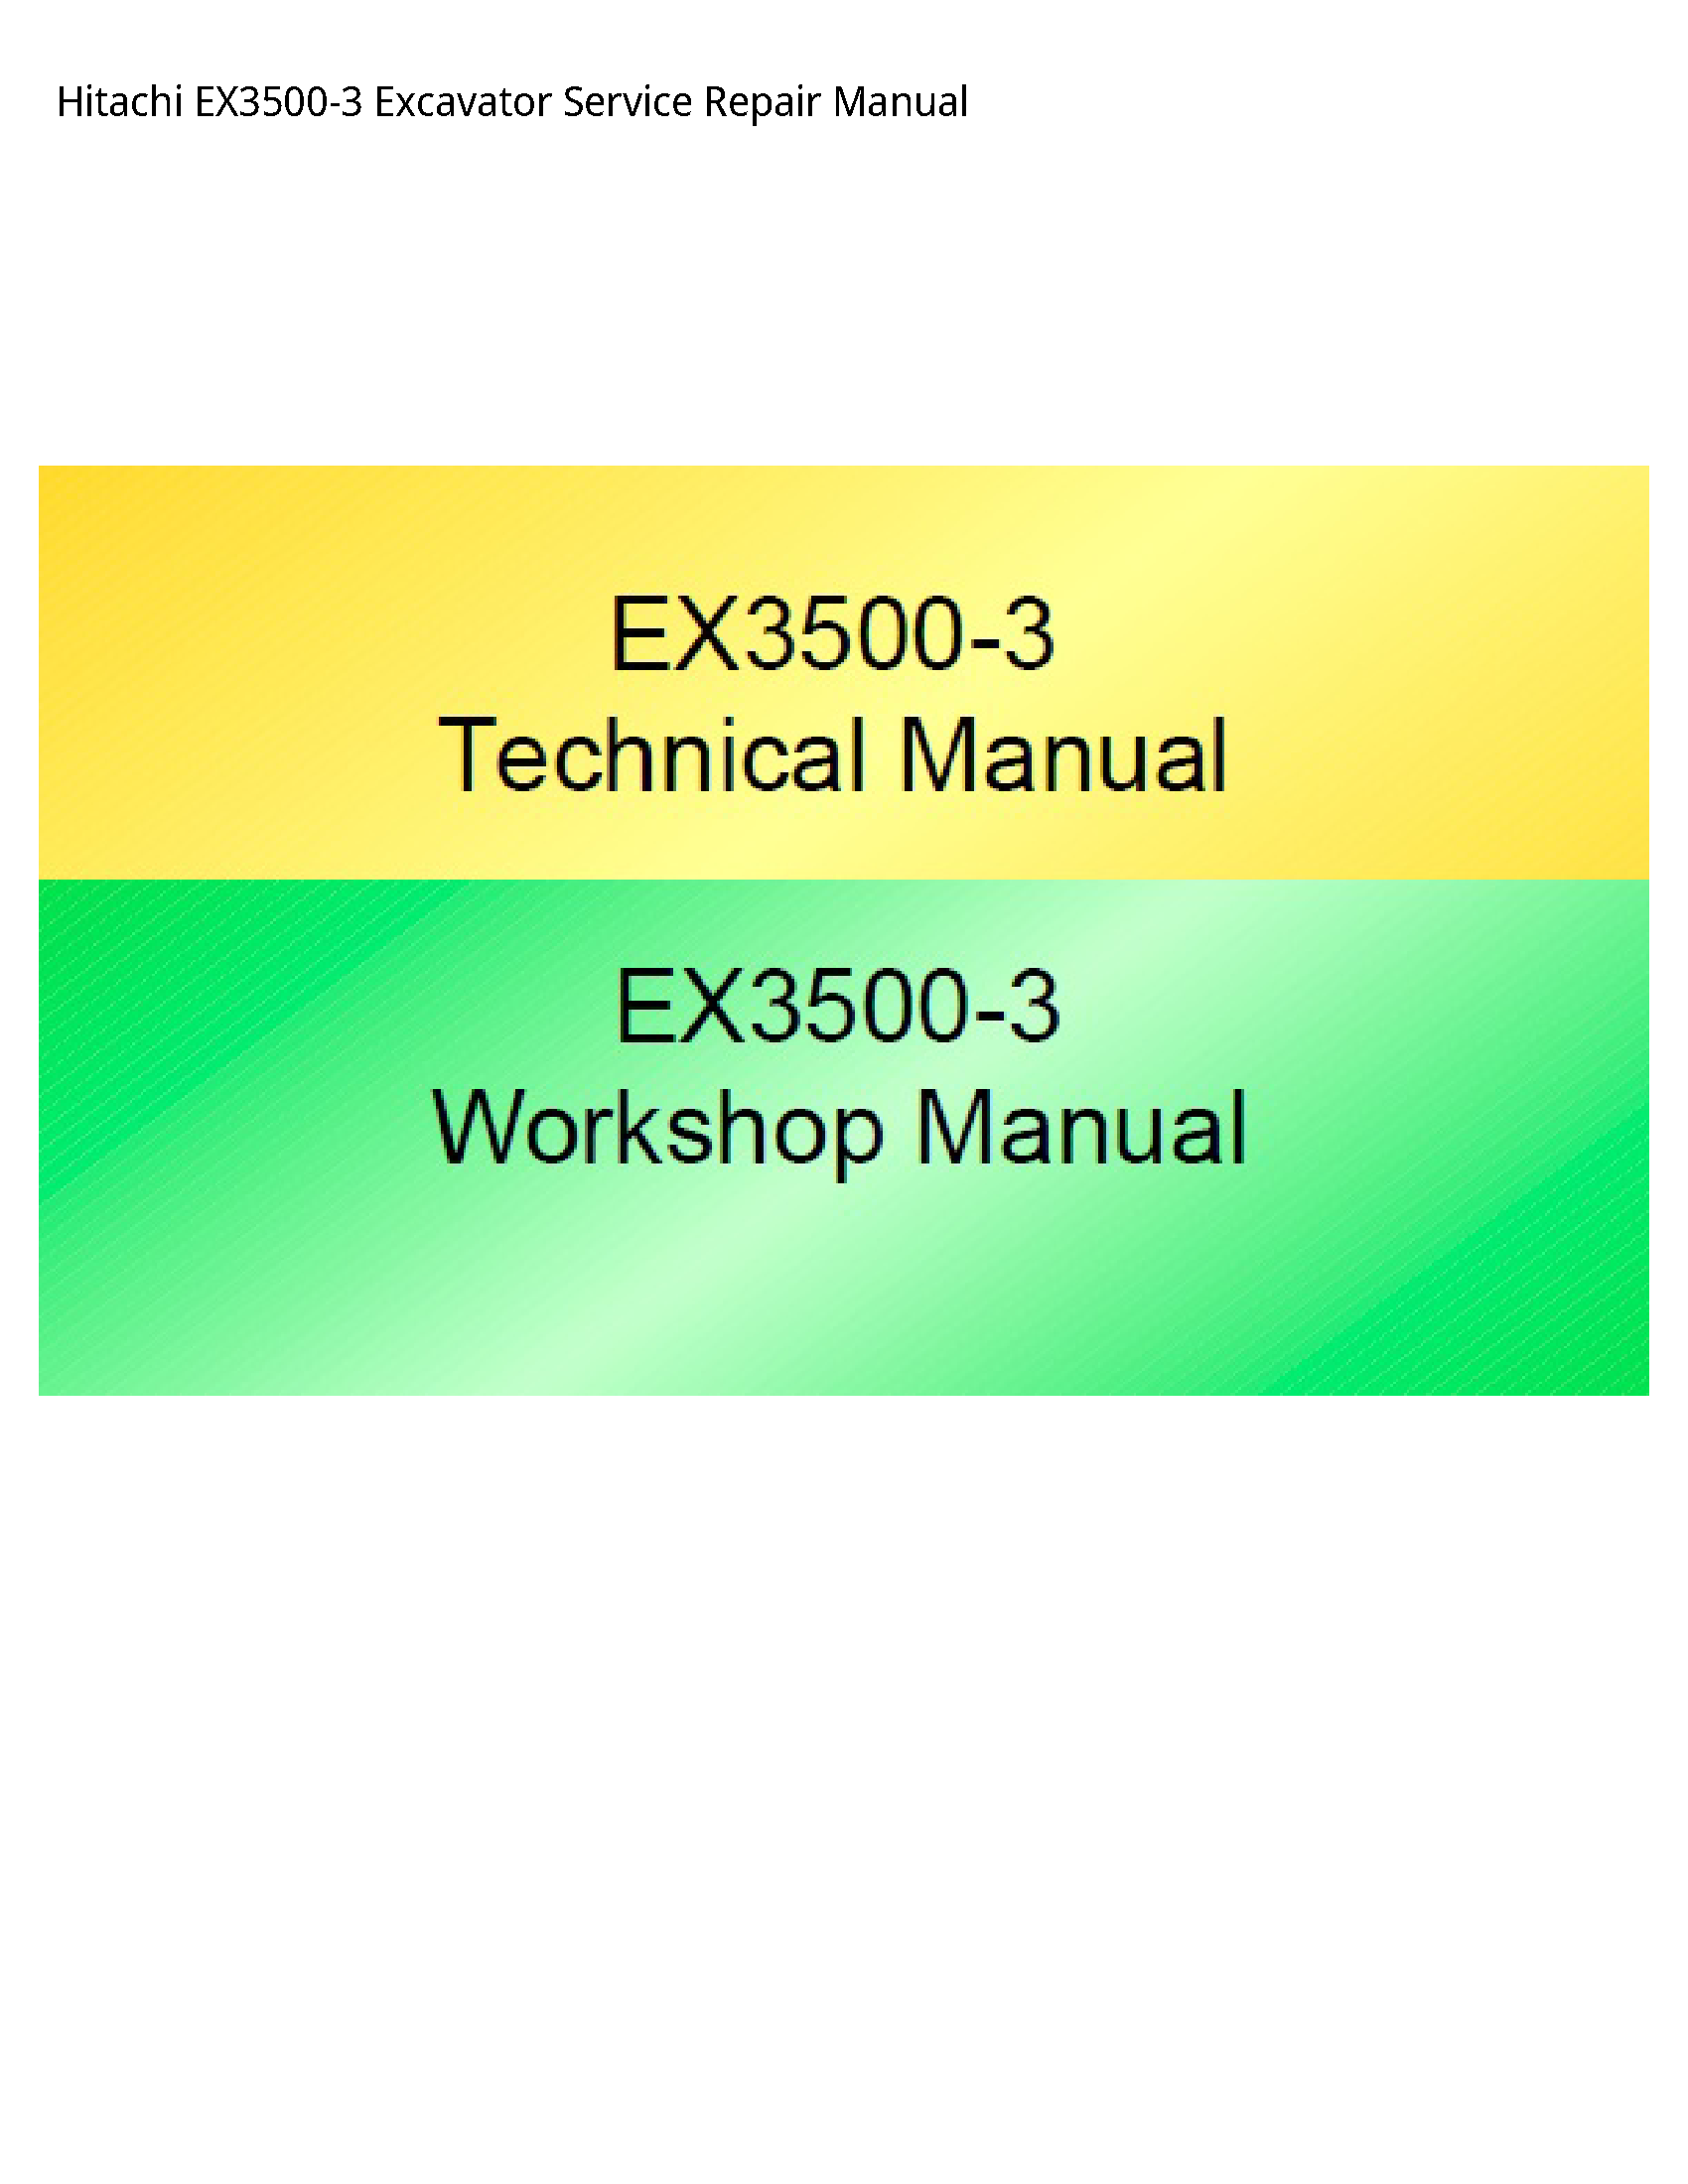 Hitachi EX3500-3 Excavator manual